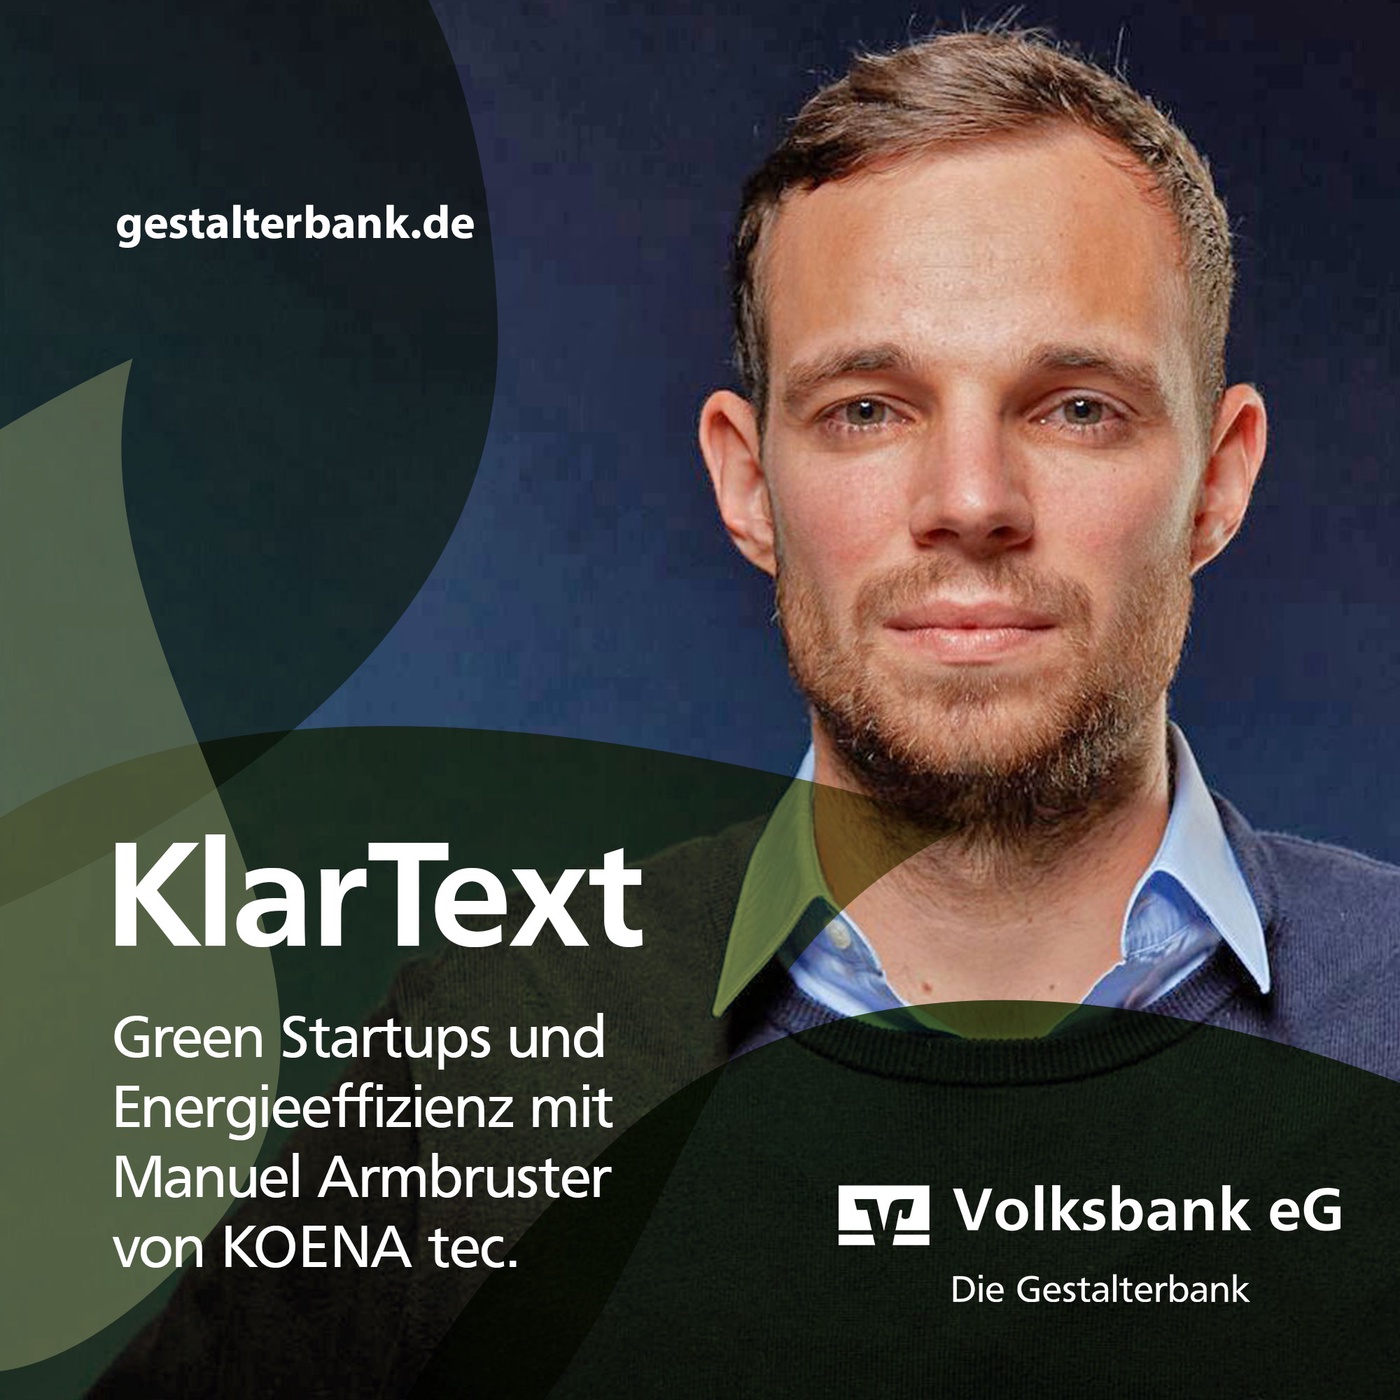 Episode 12: KlarText über Green Startups und Energieeffizienz mit Manuel Armbruster von KOENA tec